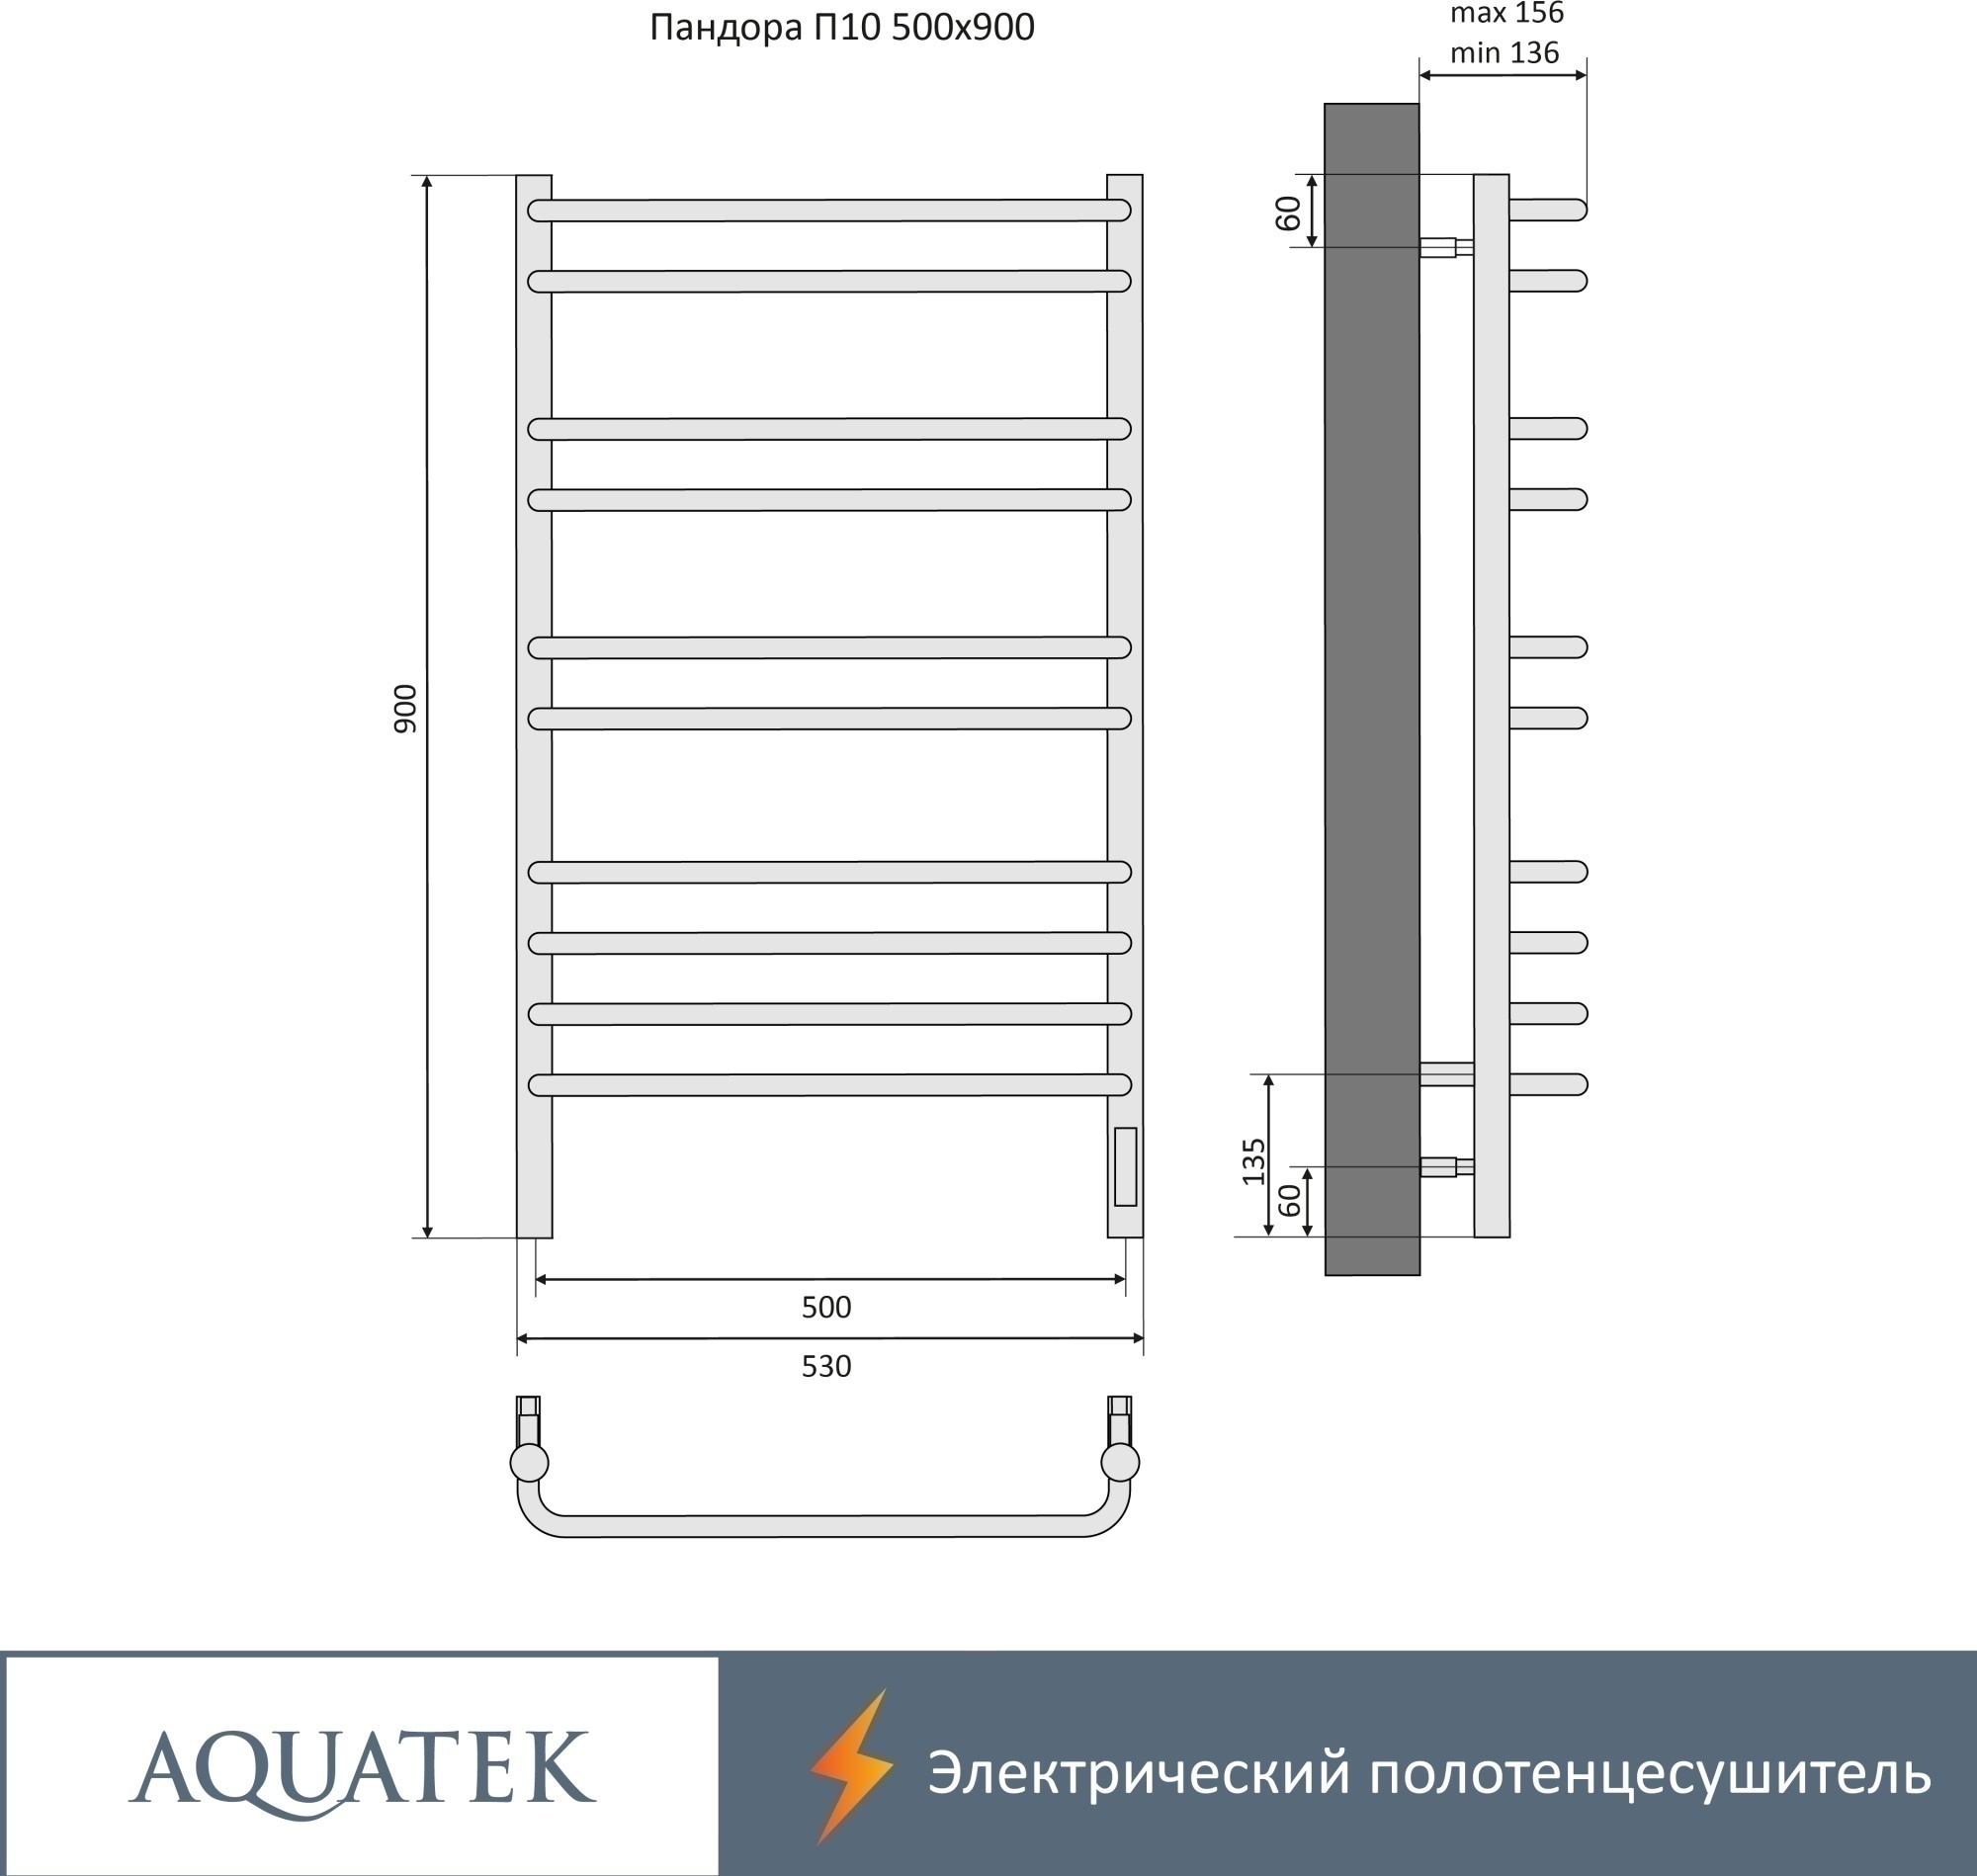 Полотенцесушитель электрический Aquatek Пандора П10 50x90 AQ EL RPC1090BL